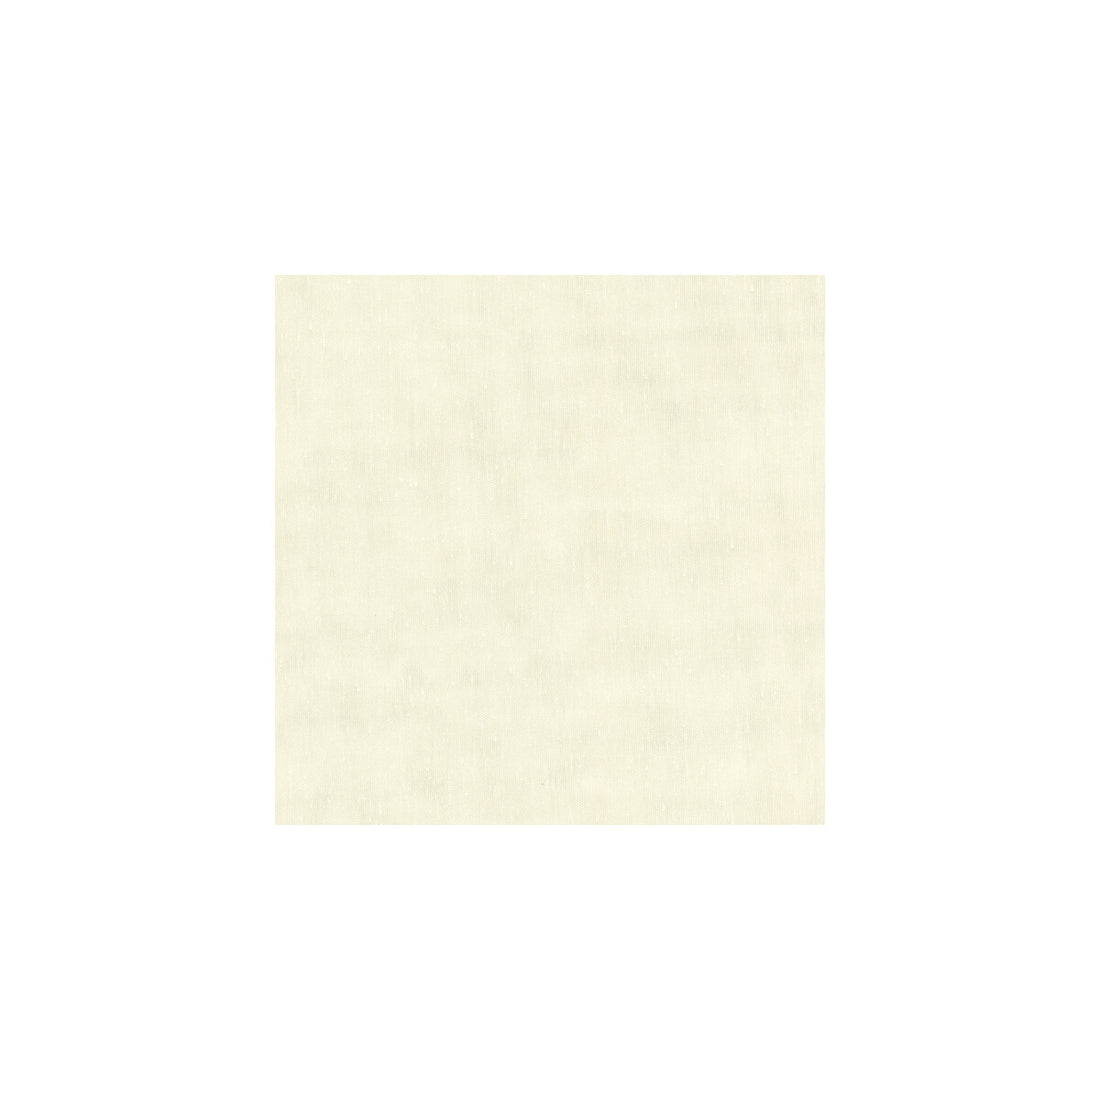 Kravet Basics fabric in 8790-100 color - pattern 8790.100.0 - by Kravet Basics